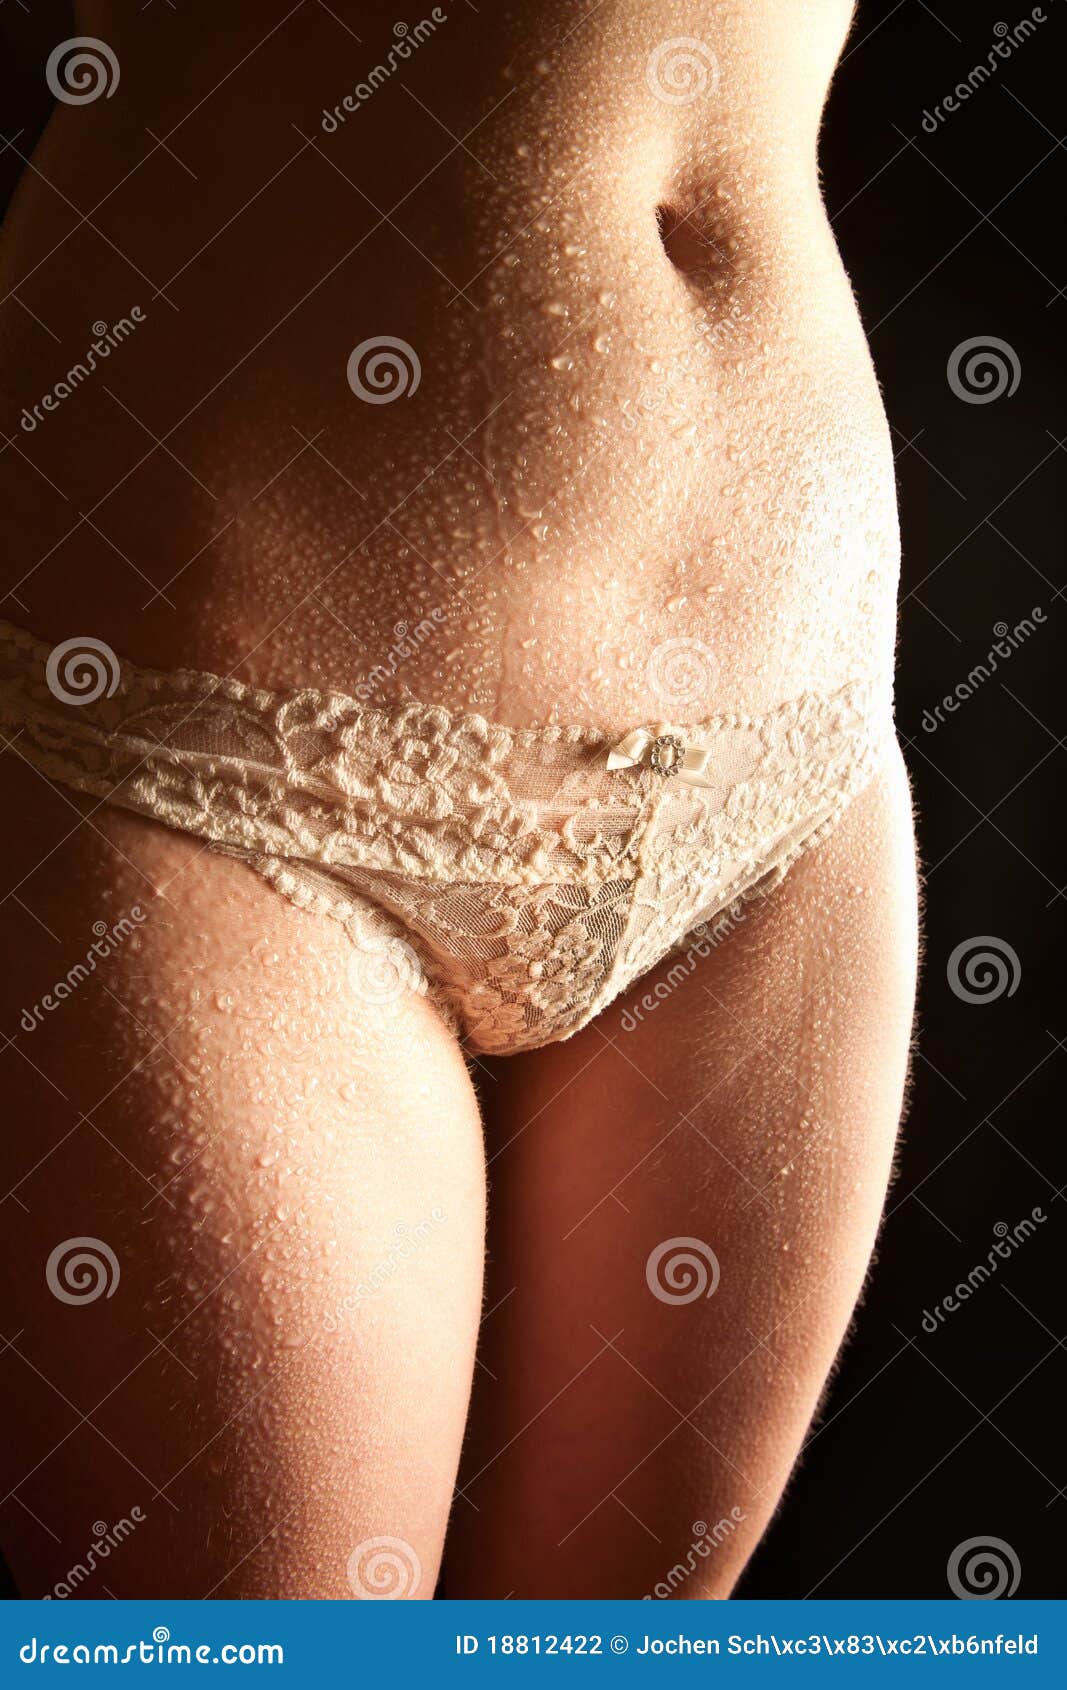 Women in wet panties